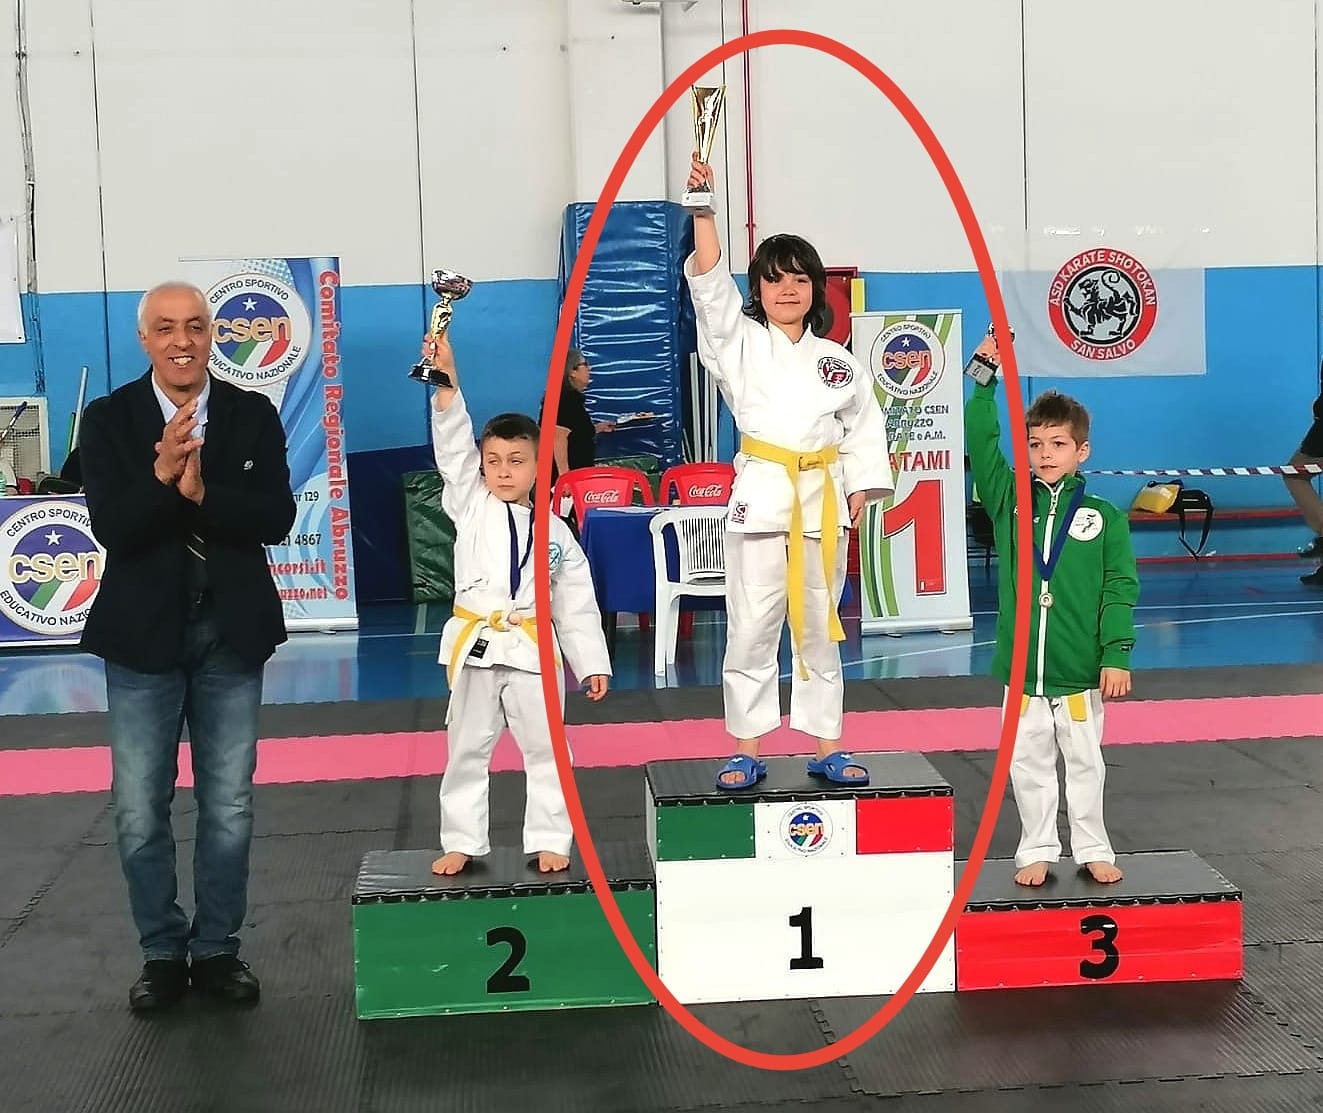 Trofeo interregionale di karate a San Salvo (CH): eccellenti i risultati per la palestra del "Karate Team Pandoli"